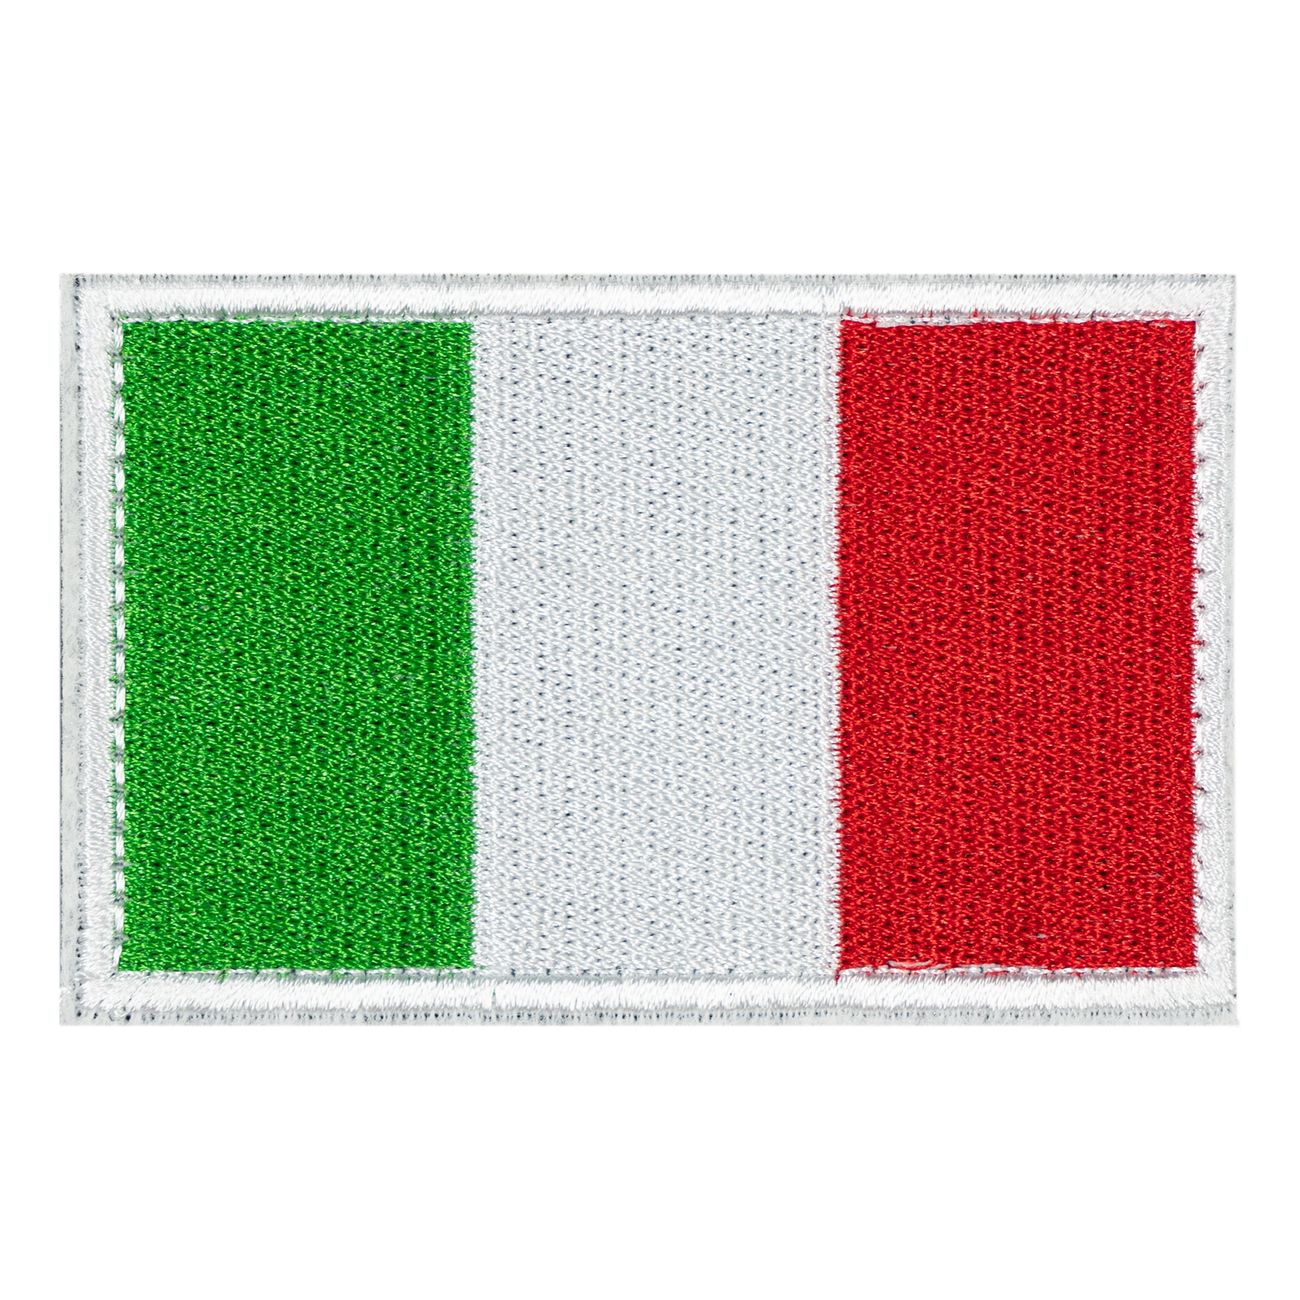 tygmarke-italienska-flaggan-92019-1